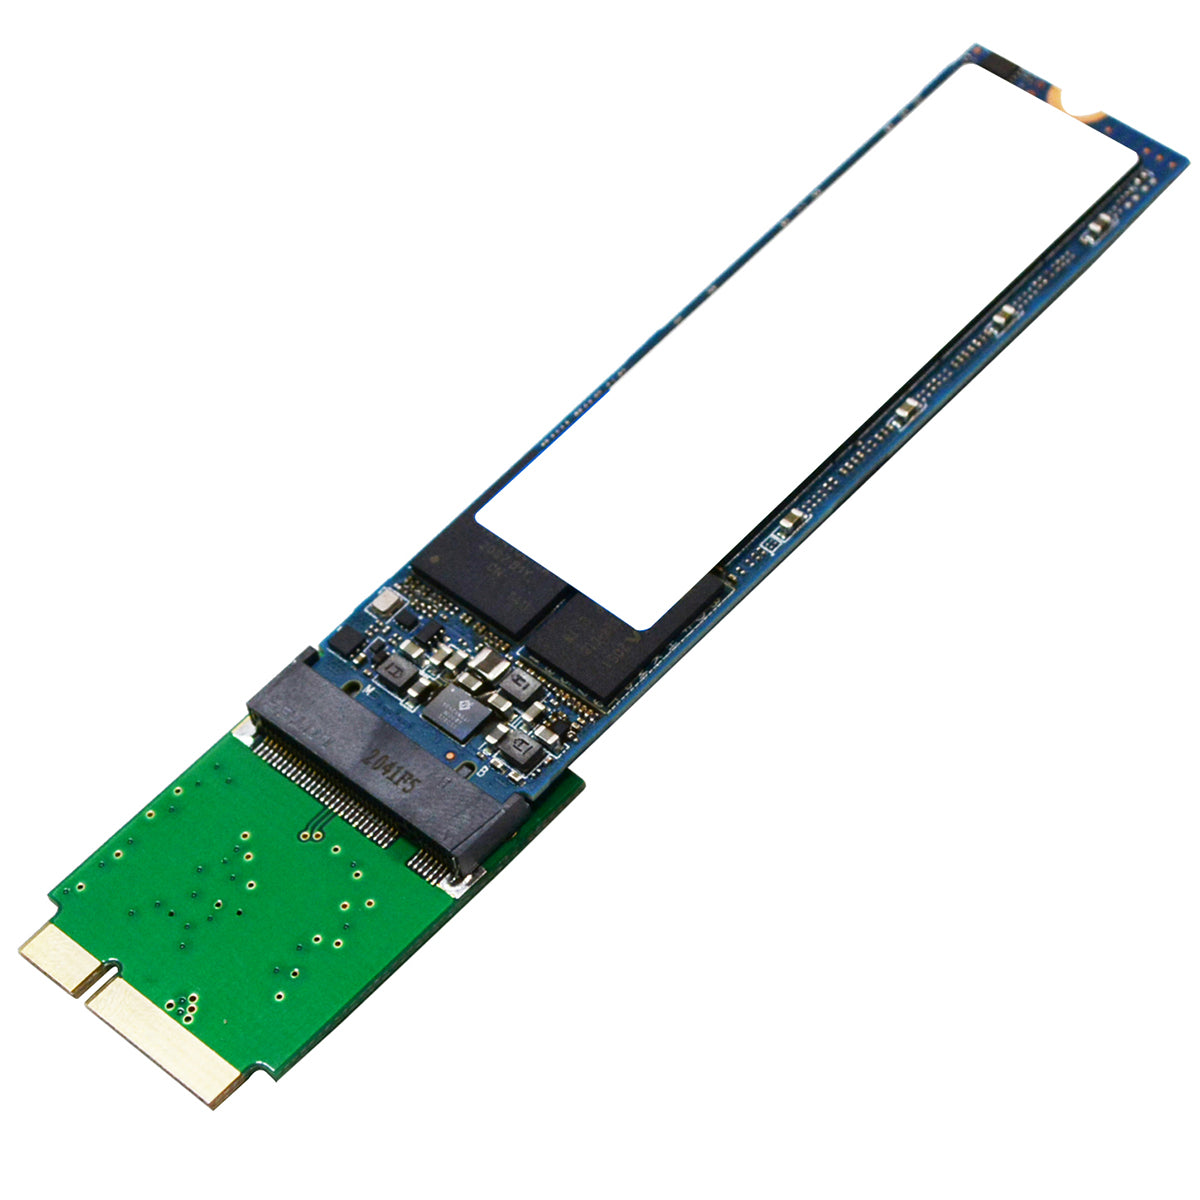 PC/タブレットM.2 SSD 1TB  アダプタｾｯﾄ